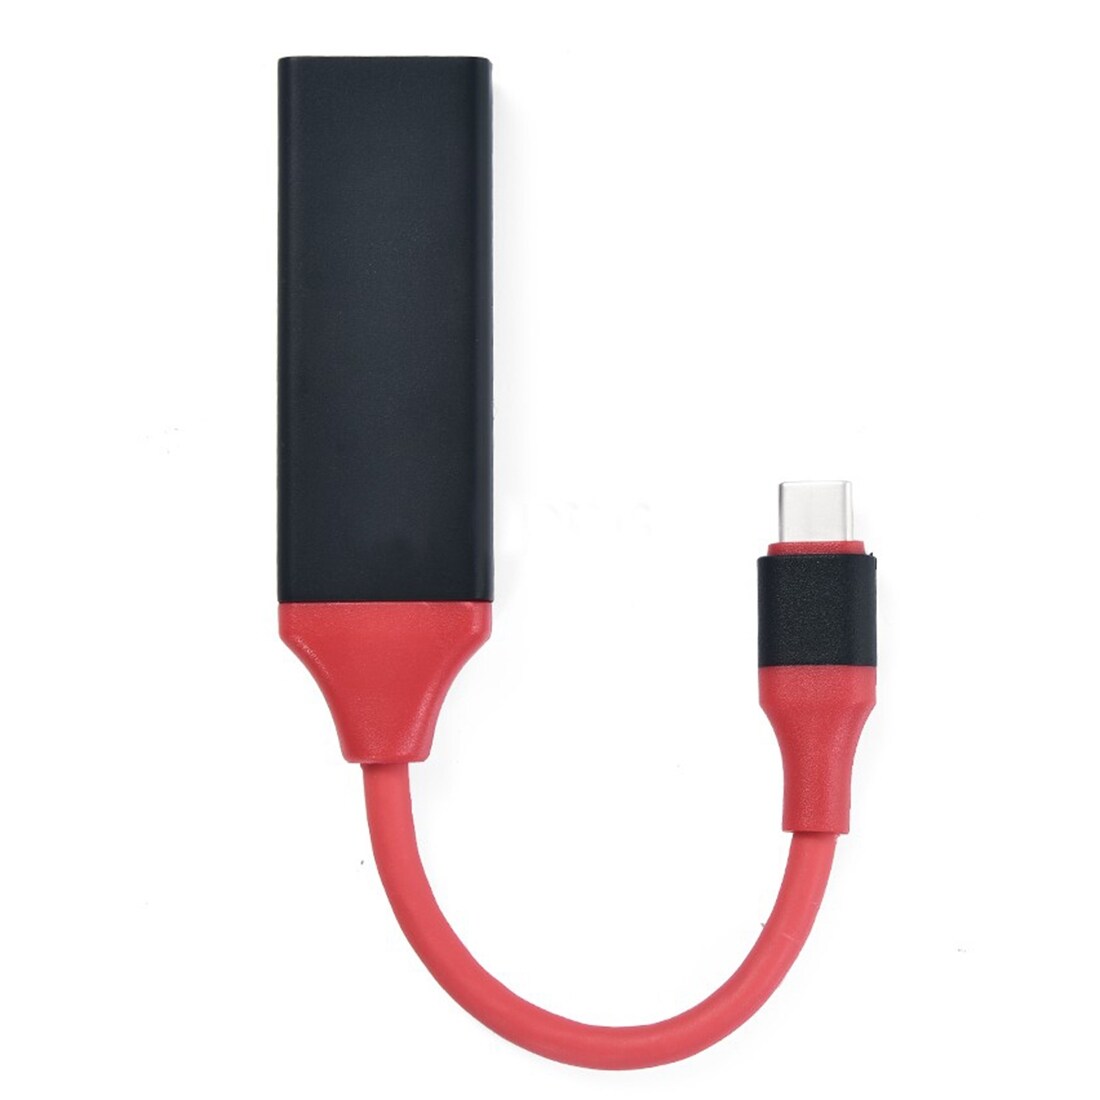 USB-C Adapter HDMI 4Kx2K HDTV til MacBook & Galaxy S8 m.m.